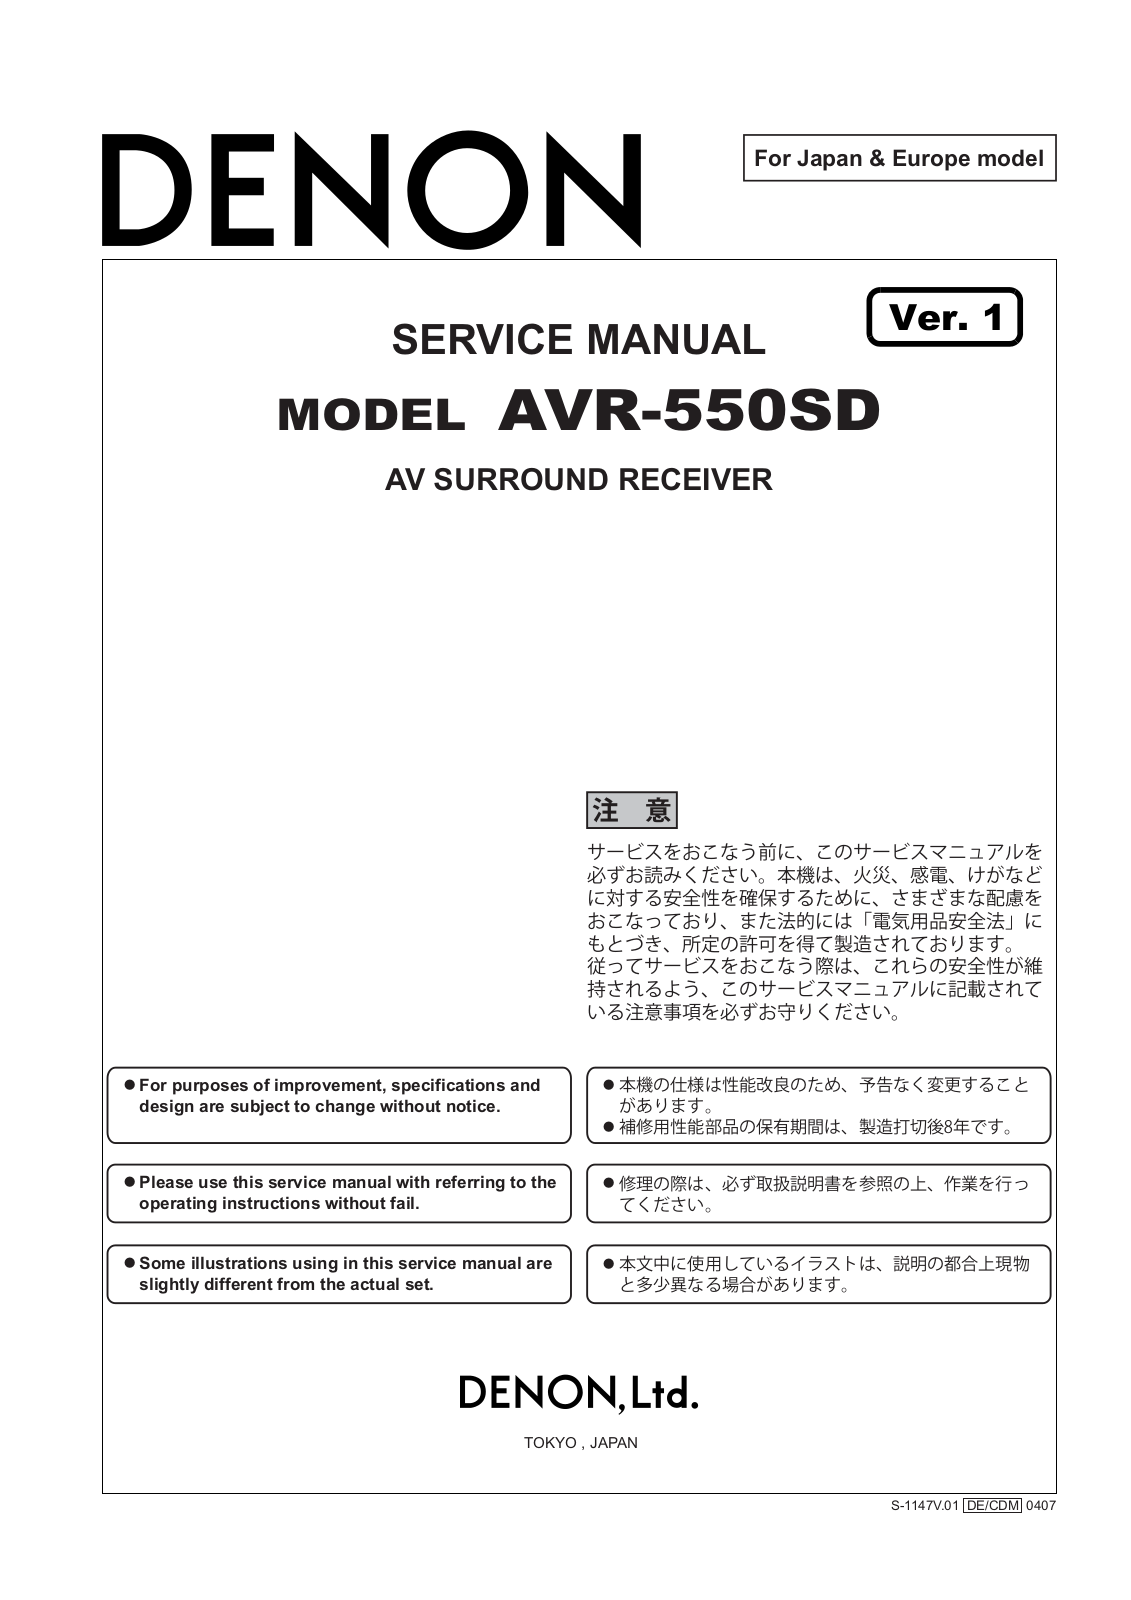 Denon AVR-550SD Schematic